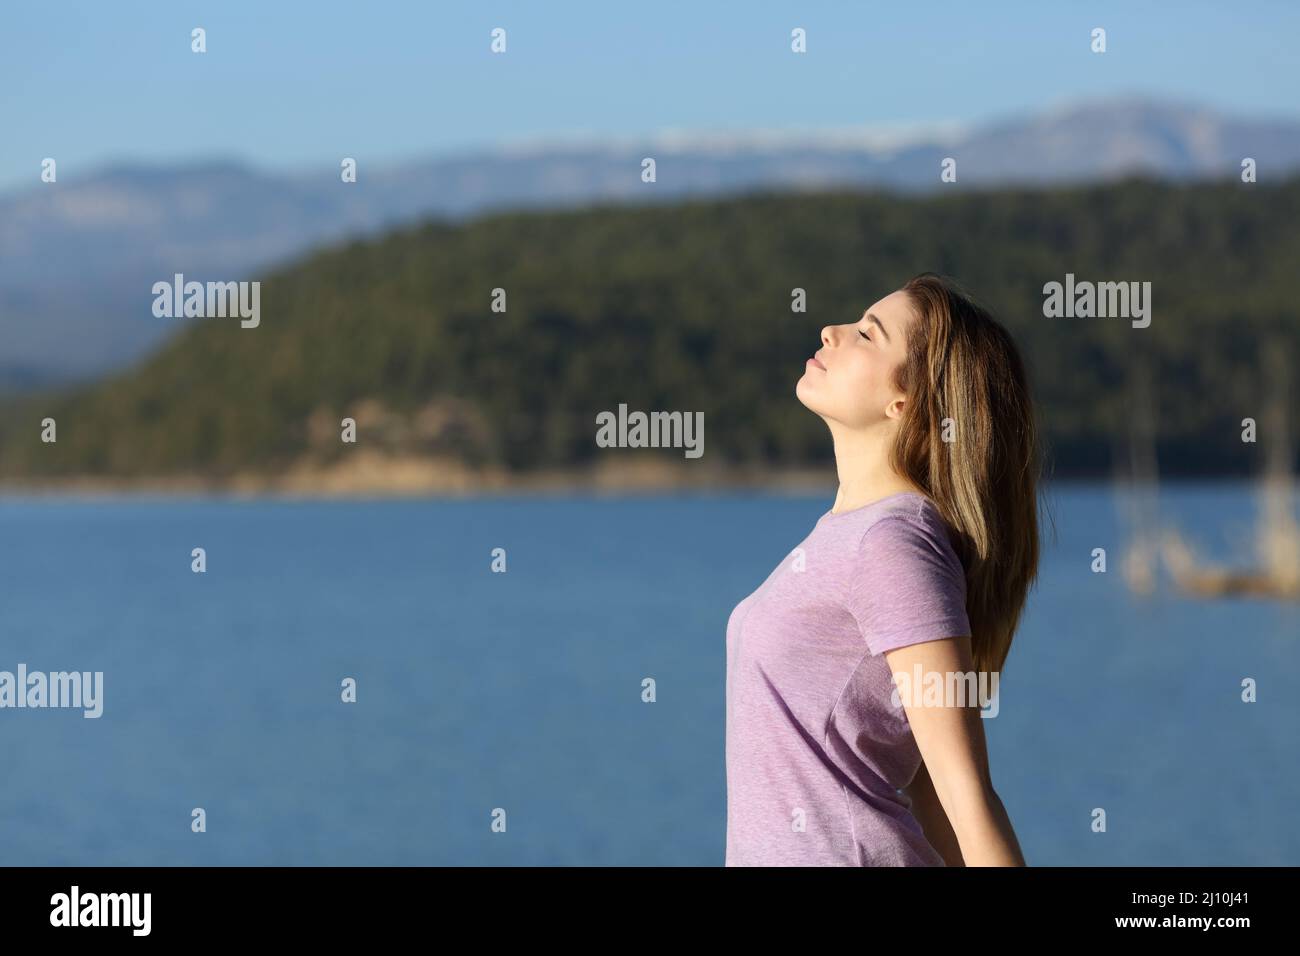 Vue latérale portrait d'une adolescente satisfaite respirant de l'air frais dans un lac Banque D'Images